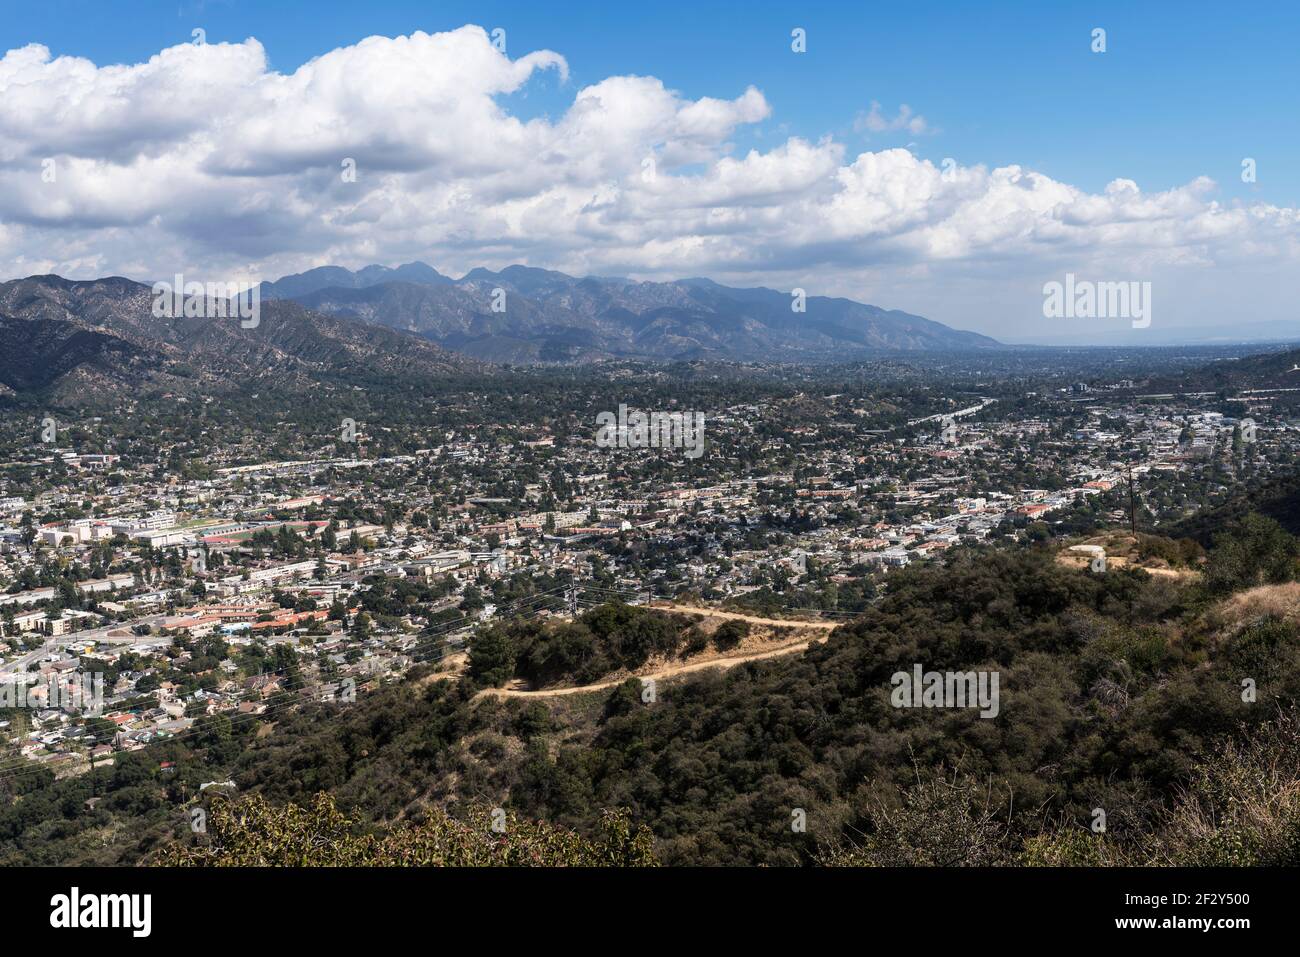 Vista panoramica delle case e delle strade di la Crescenta, Montrose e Glendale nella contea di Los Angeles, California. Foto Stock